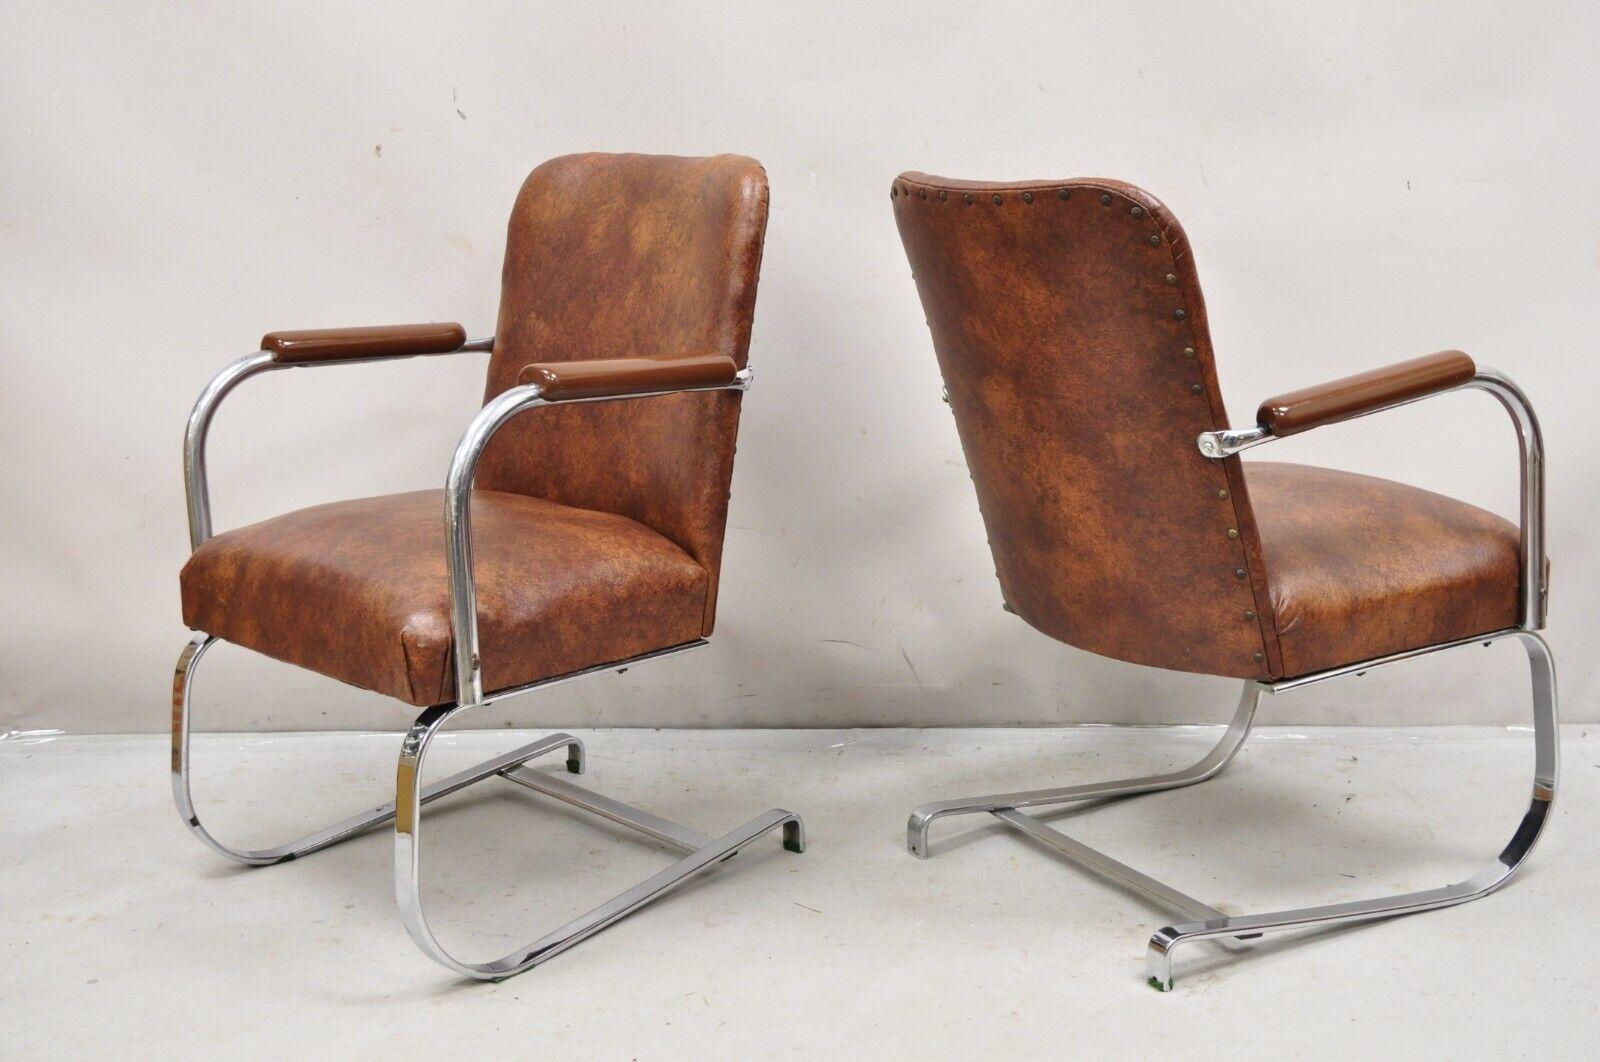 Vintage Lloyds Mfg Kem Weber Art Deco Steel Cantilever Lounge Chairs - a Pair. L'article se caractérise par un piétement luge à barre plate en acier, un revêtement en Naugahyde marron, une étiquette d'origine, de très jolies chaises